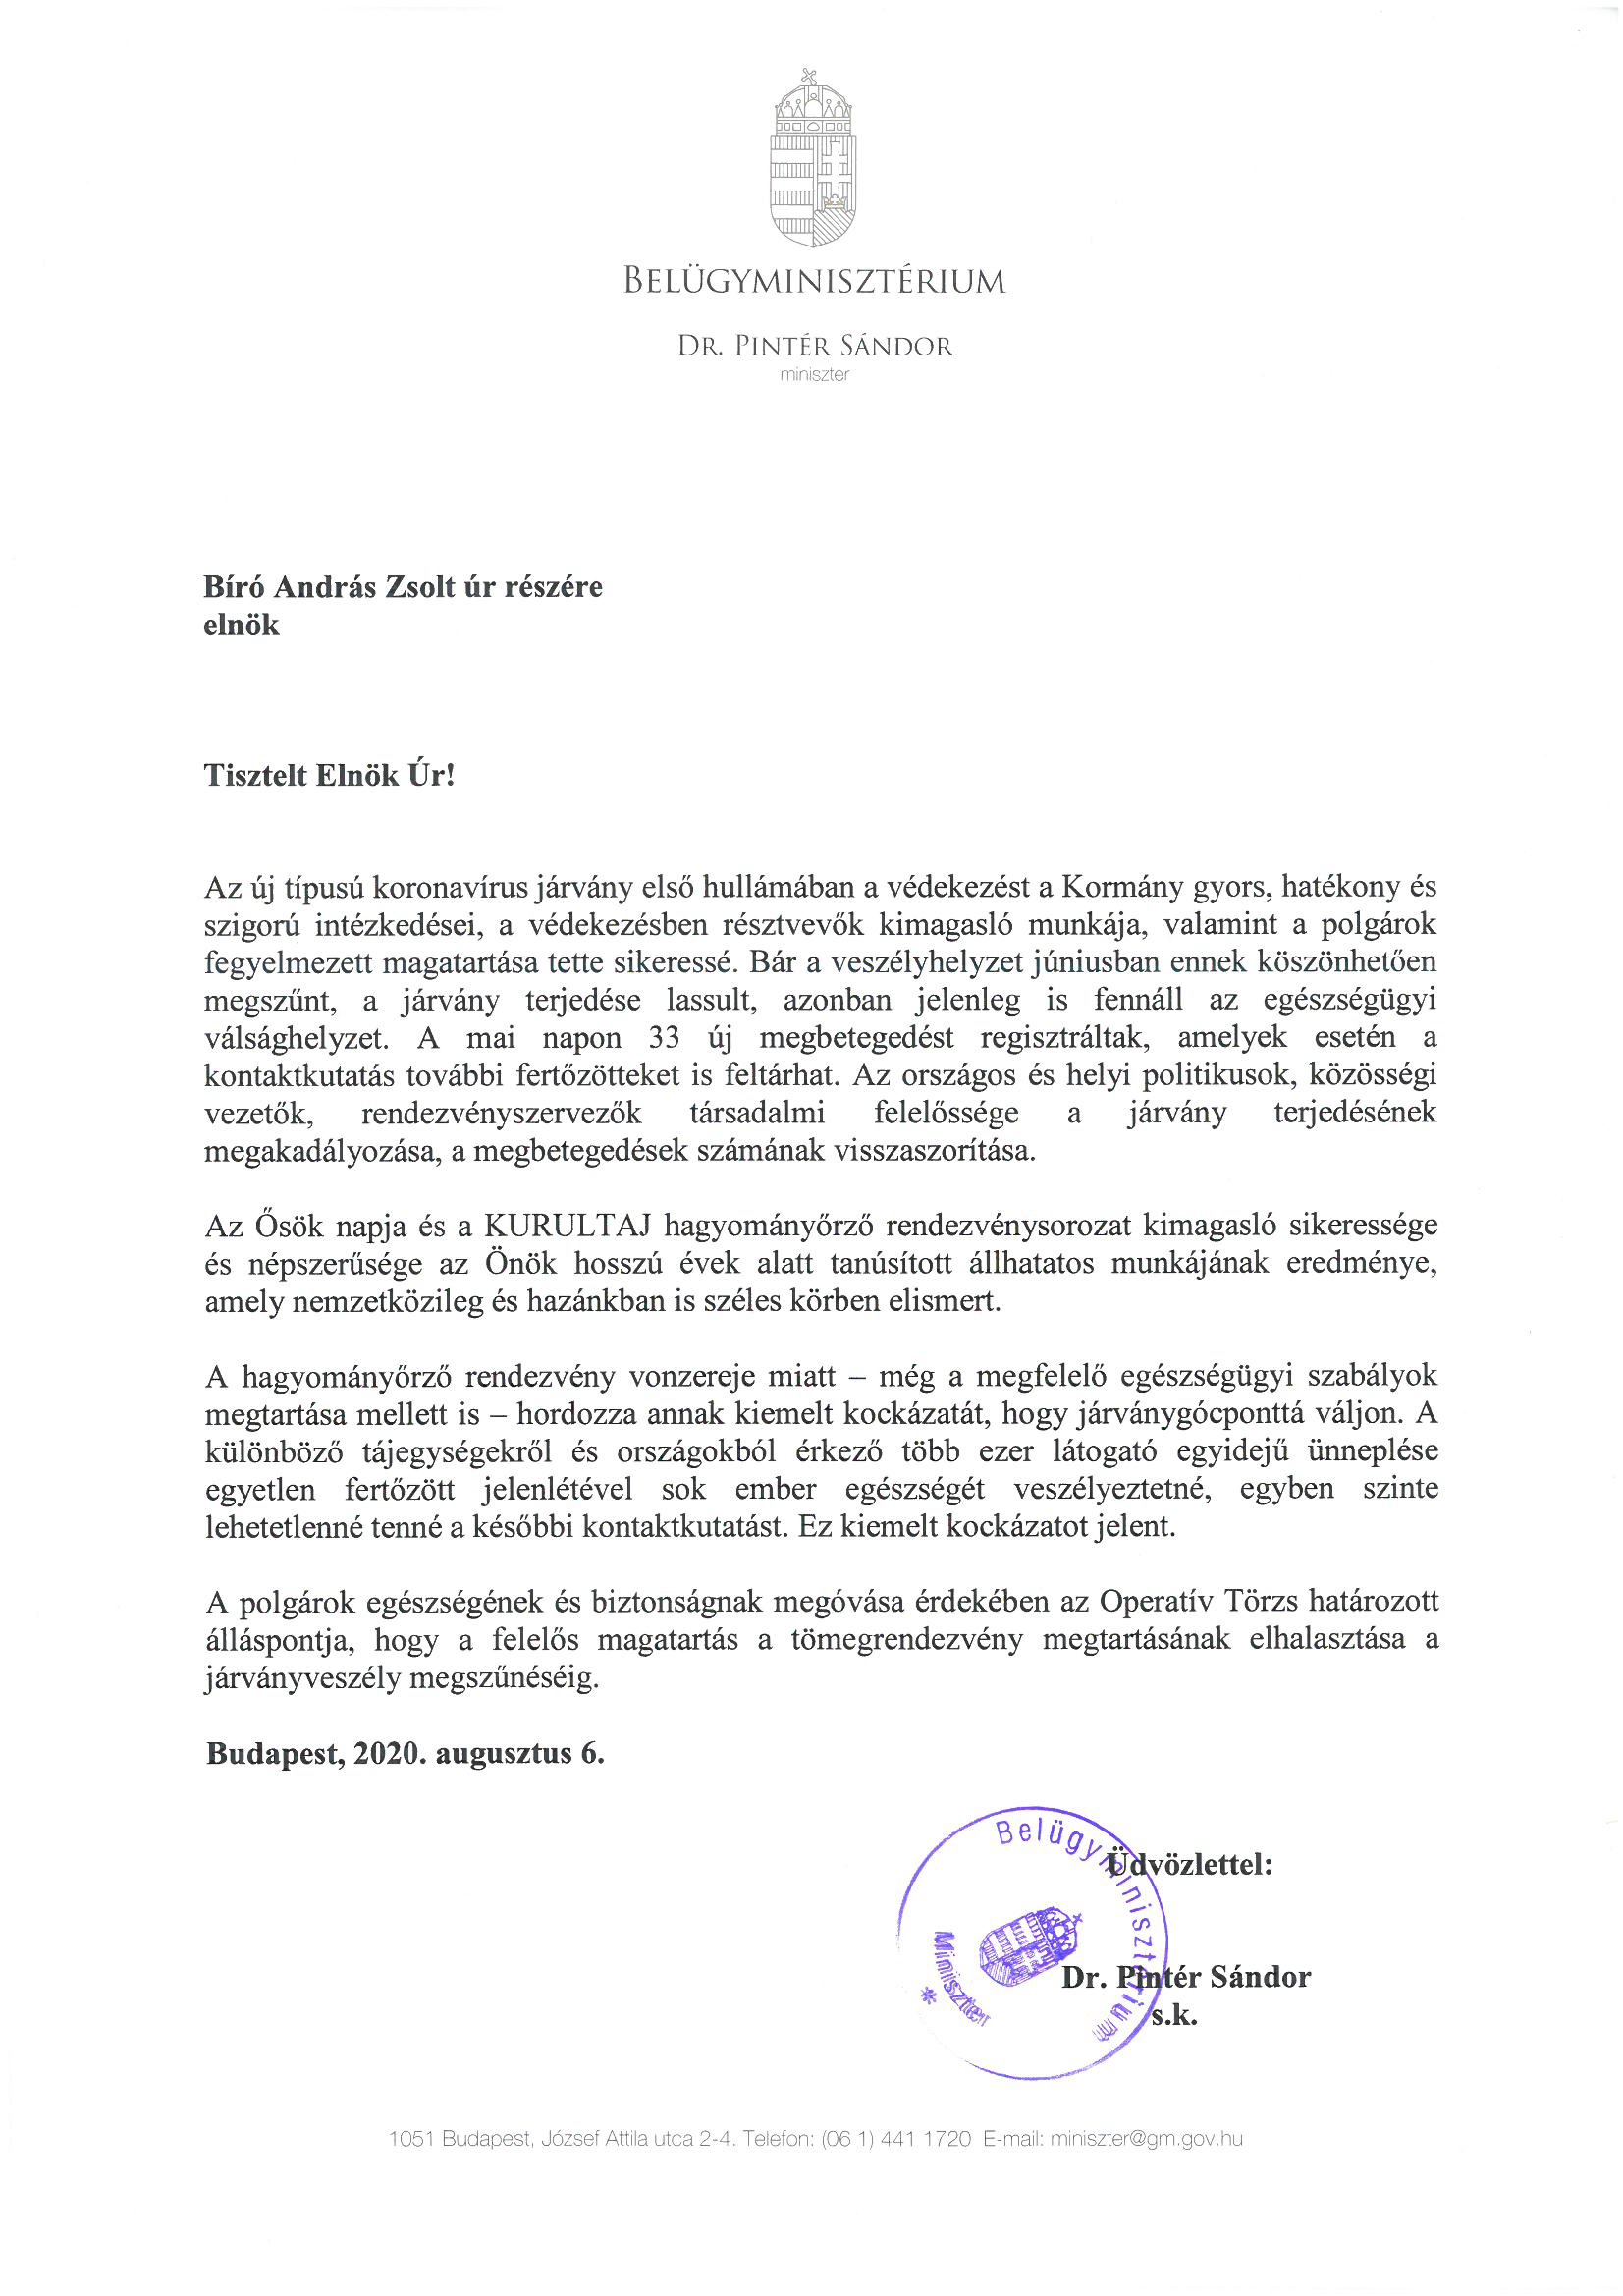 Magyarország belügyminiszterének, Dr. Pintér Sándornak a levele